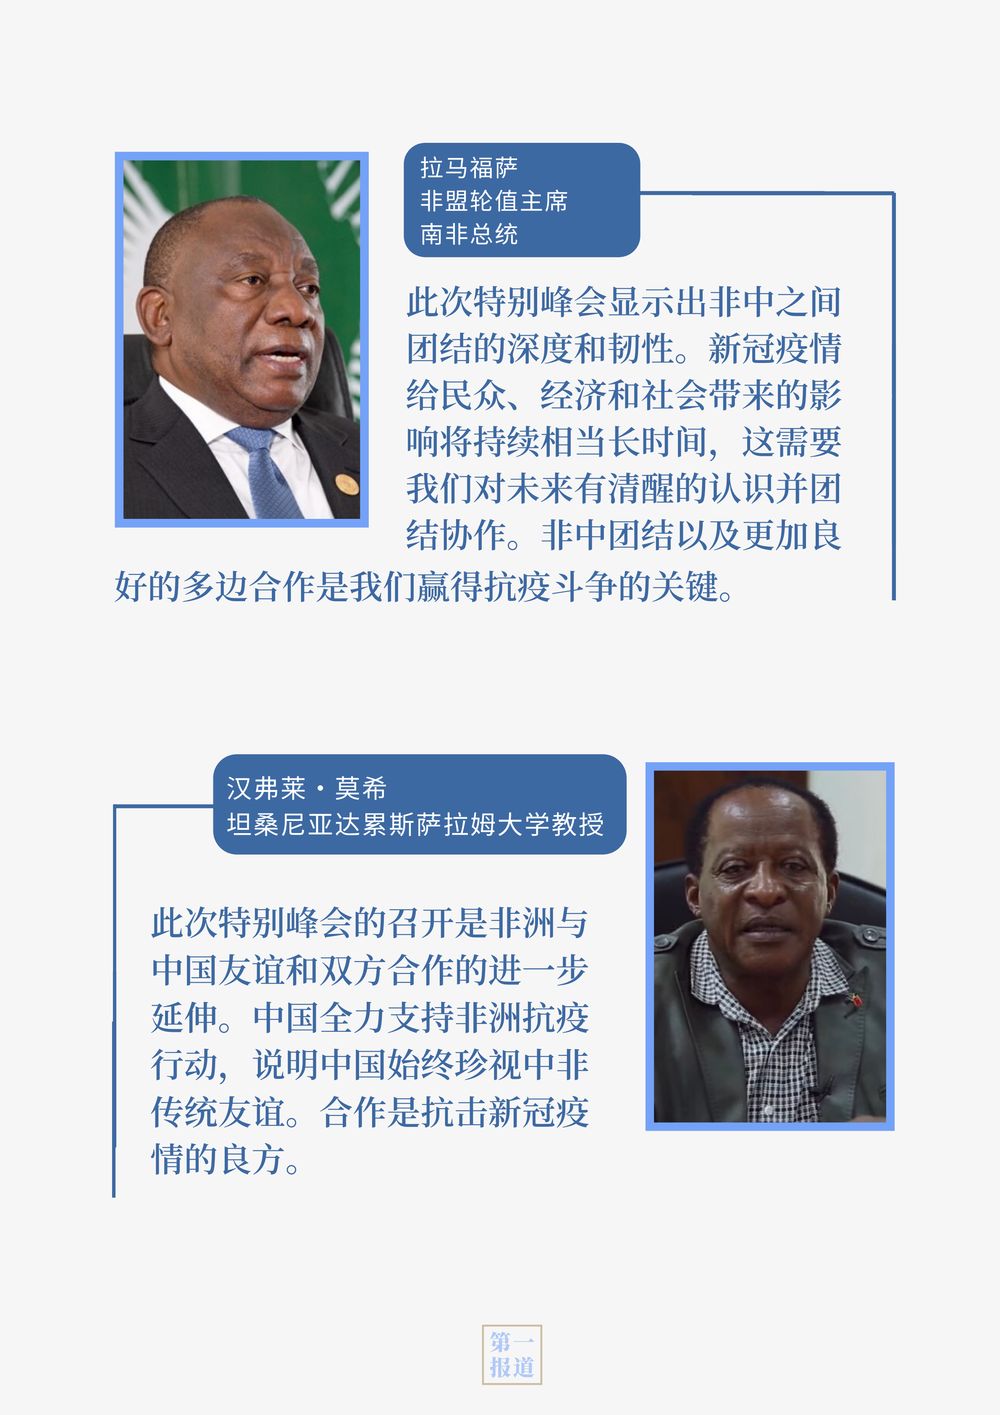 中非团结抗疫特别峰会，让世界感受到中国情谊、中国担当